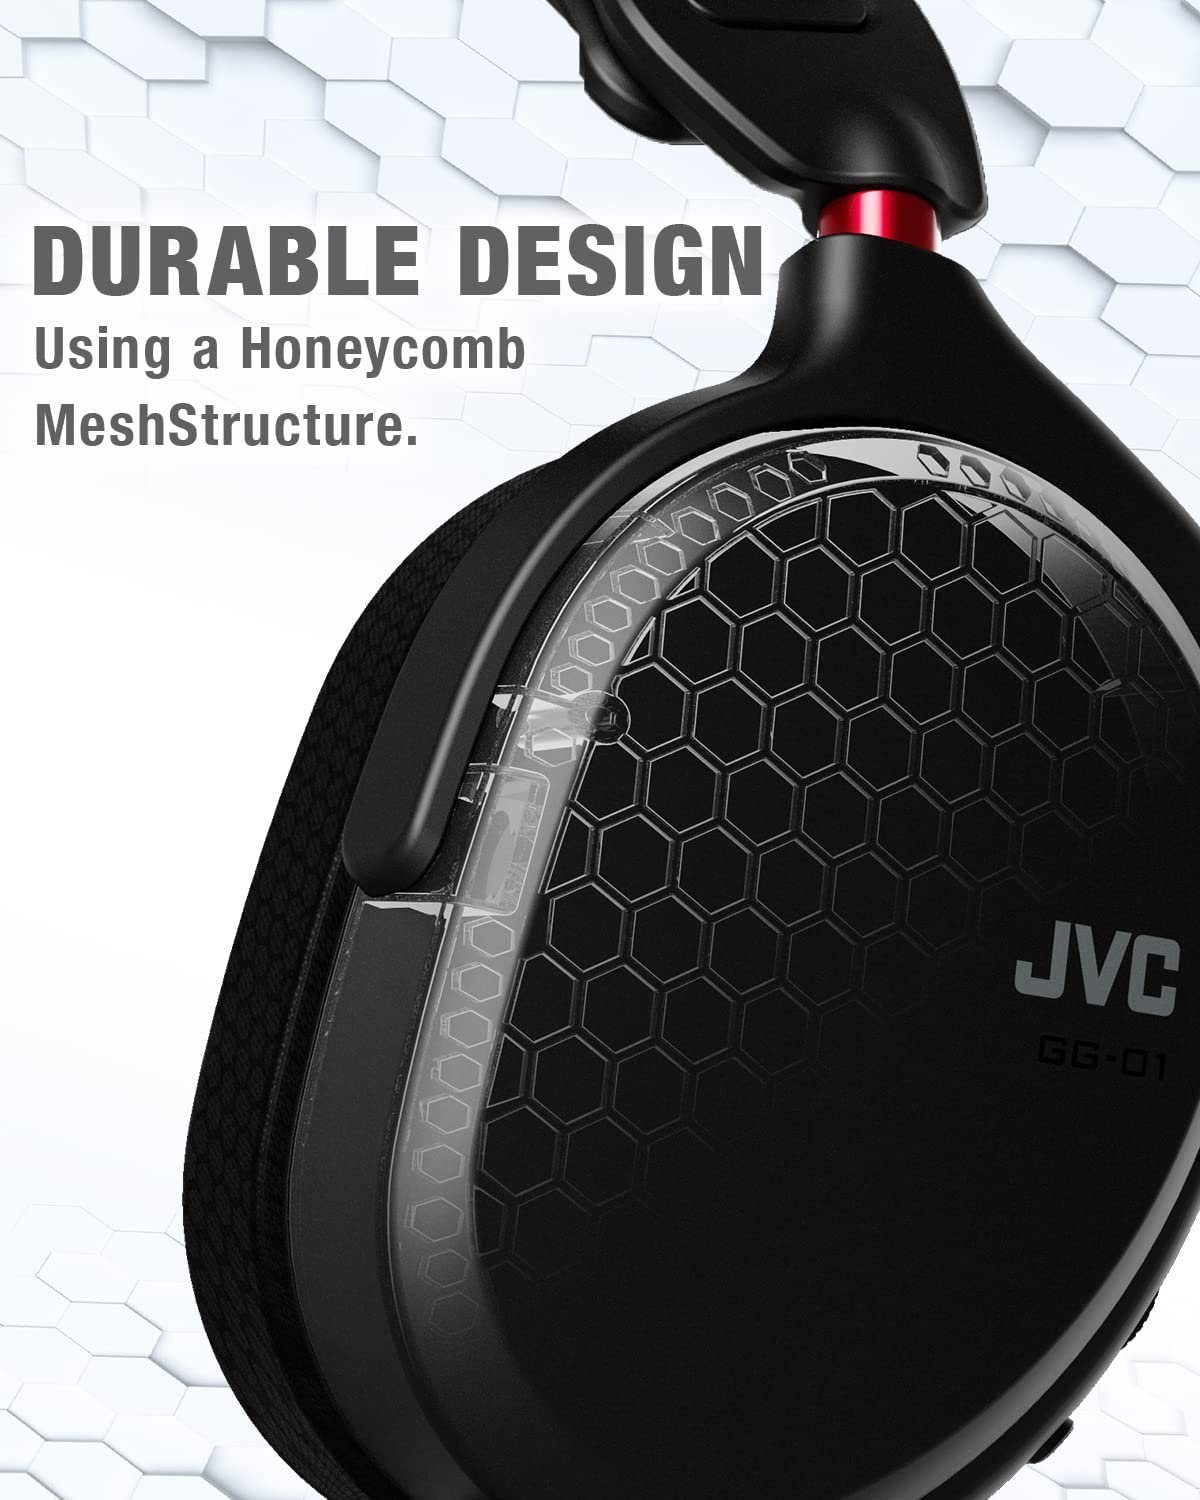 mit kabelgebunden, Over-Ear Mikrofon, GG-01BQ JVC Gaming-Kopfhörer Gaming-Headset Schwarz